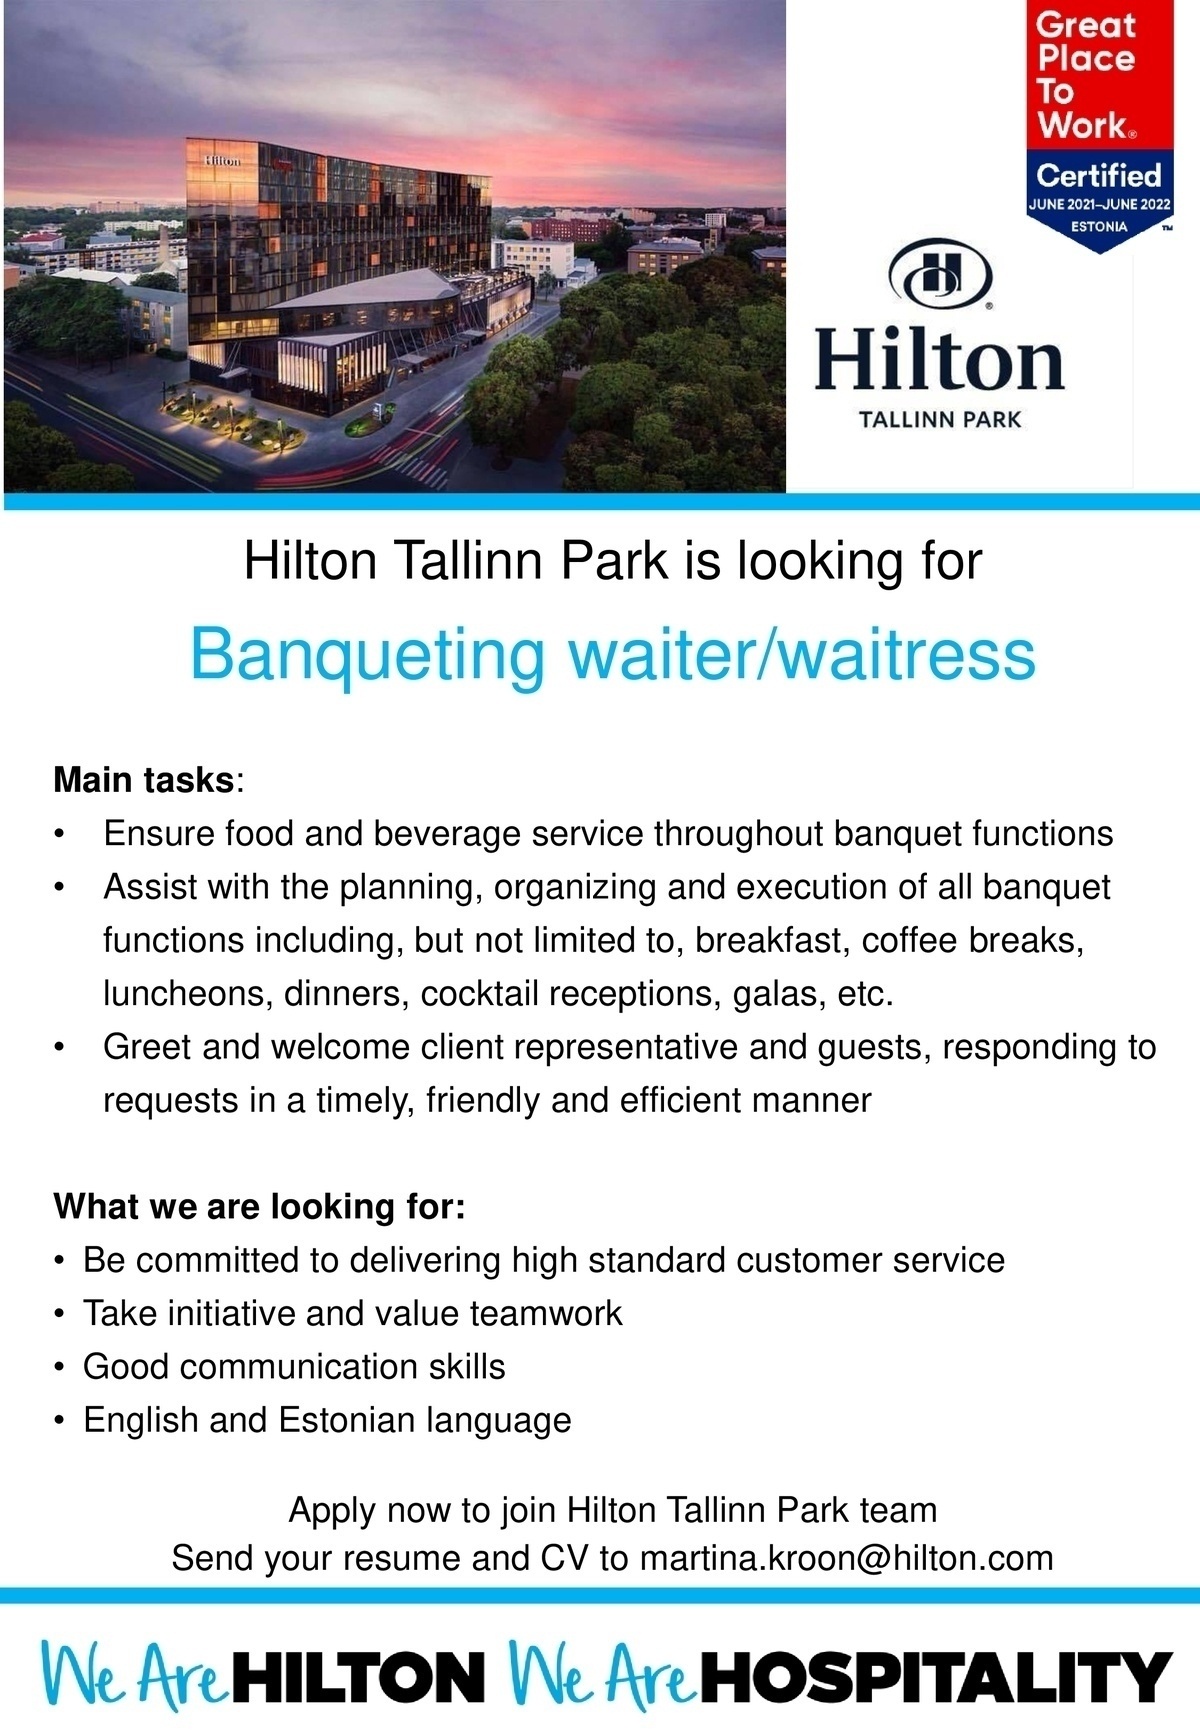 Hilton Tallinn Park Banqueting Waiter